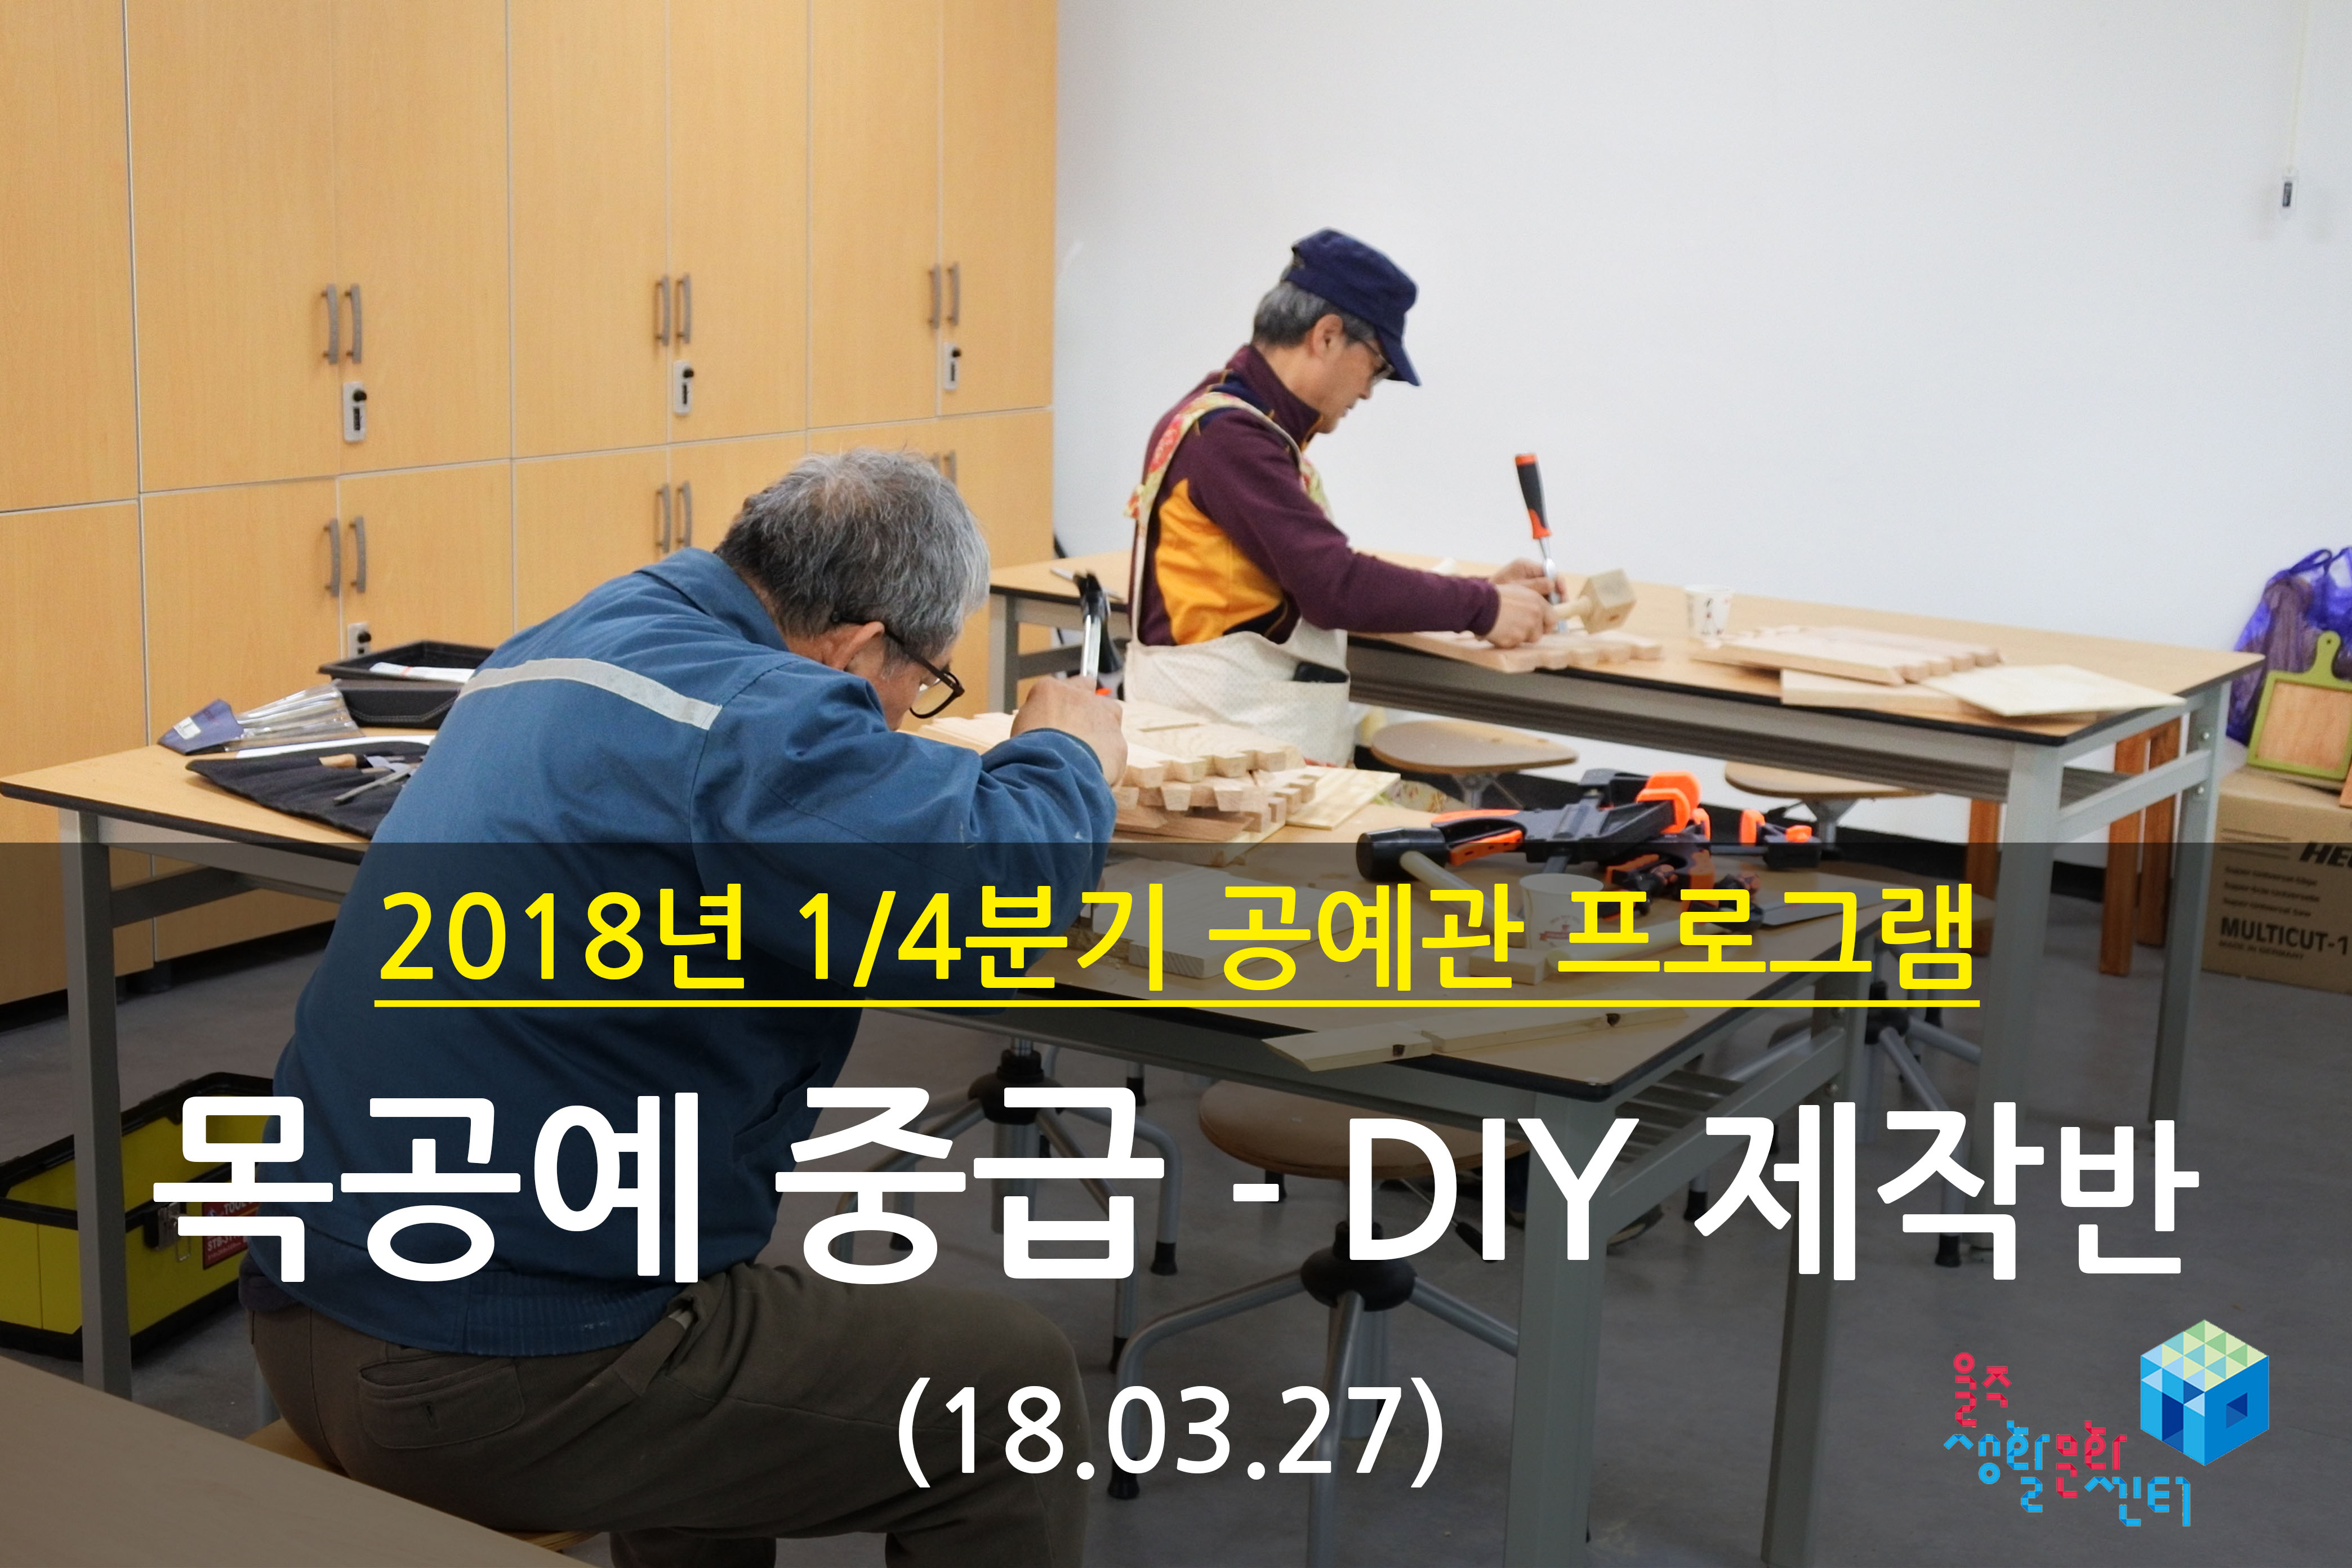 2018.03.27 _ 목공예 중급 - DIY 제작반 _ 1/4분기 12주차 수업